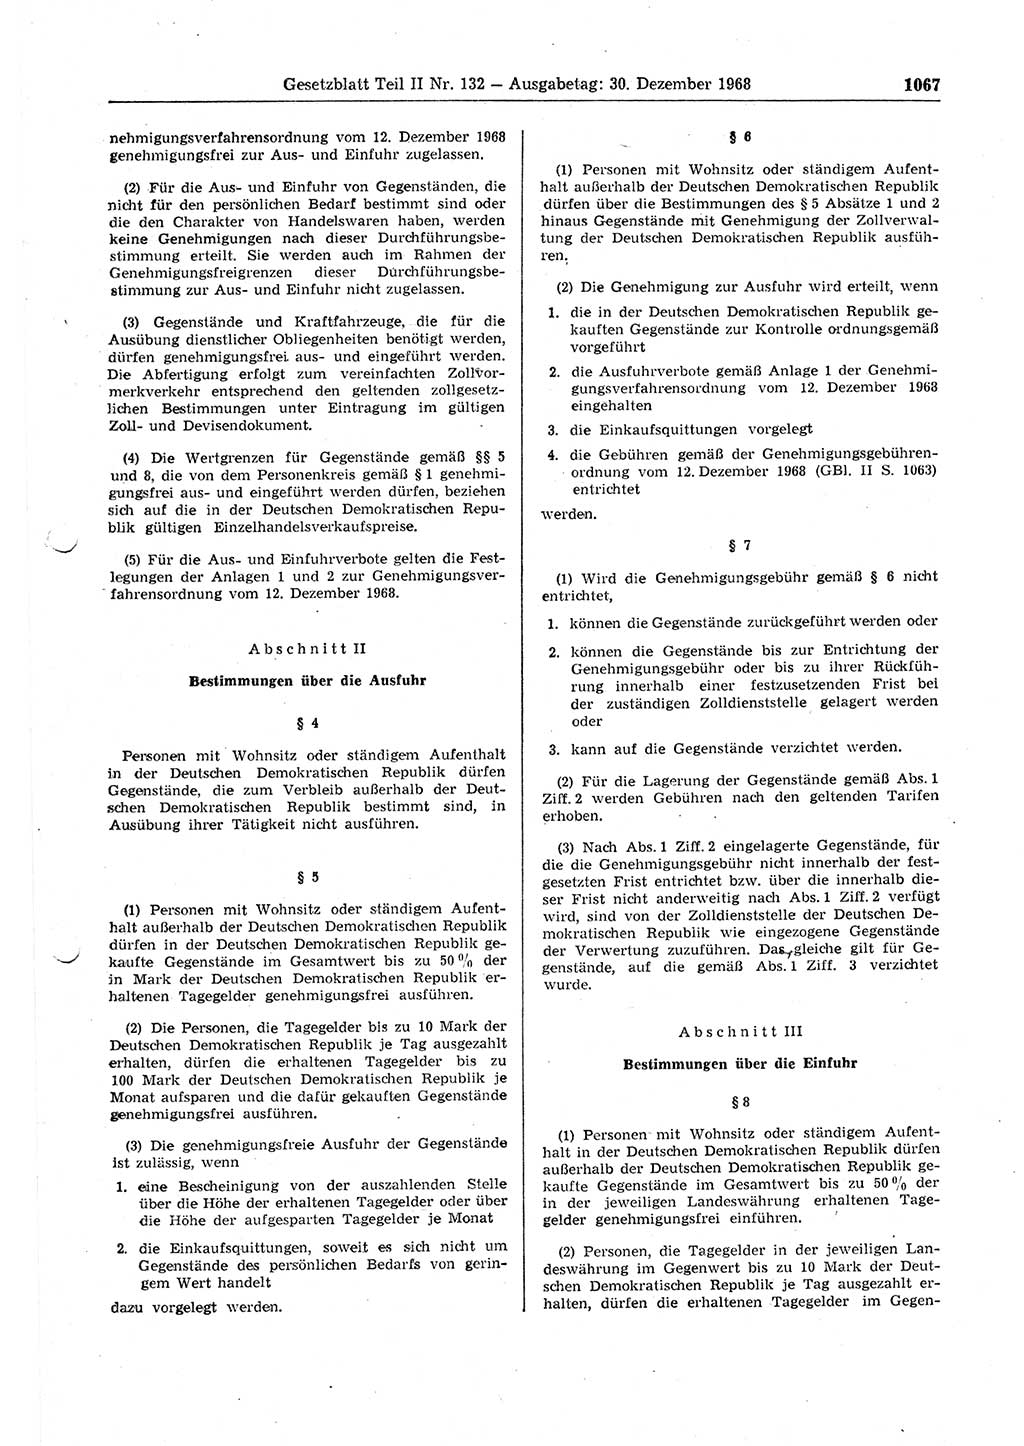 Gesetzblatt (GBl.) der Deutschen Demokratischen Republik (DDR) Teil ⅠⅠ 1968, Seite 1067 (GBl. DDR ⅠⅠ 1968, S. 1067)